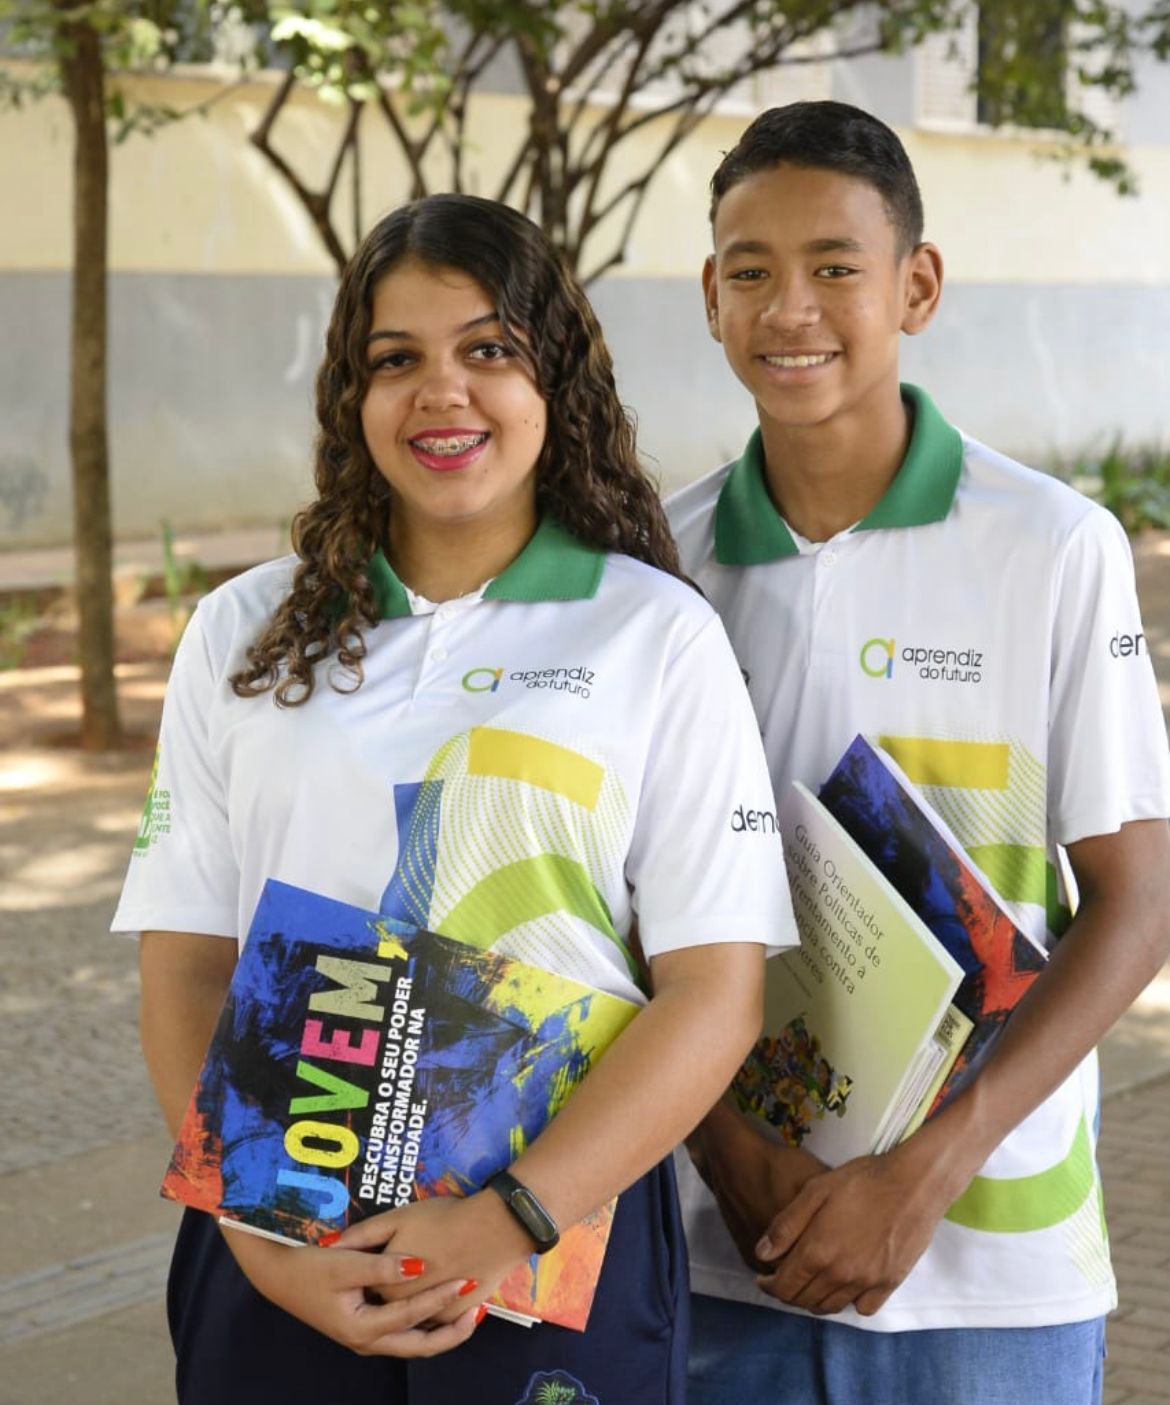 Jovens podem se inscrever no programa Aprendiz do Futuro; salário é de R$ 619,99 - aprendiz do futura